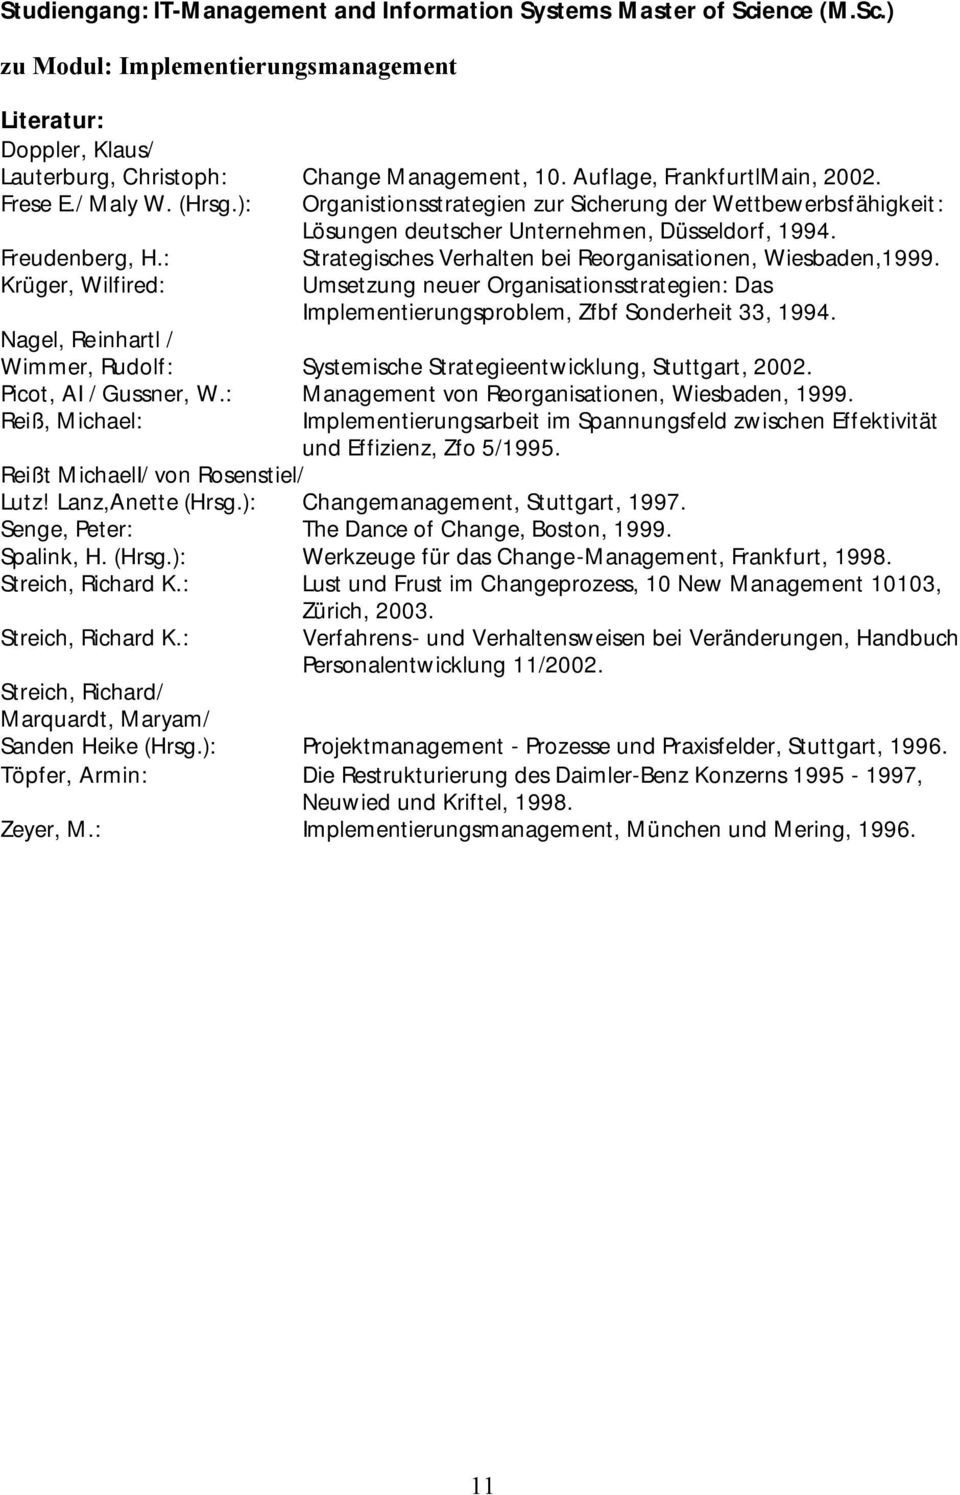 : Krüger, Wilfired: Strategisches Verhalten bei Reorganisationen, Wiesbaden,1999. Umsetzung neuer Organisationsstrategien: Das Implementierungsproblem, Zfbf Sonderheit 33, 1994.